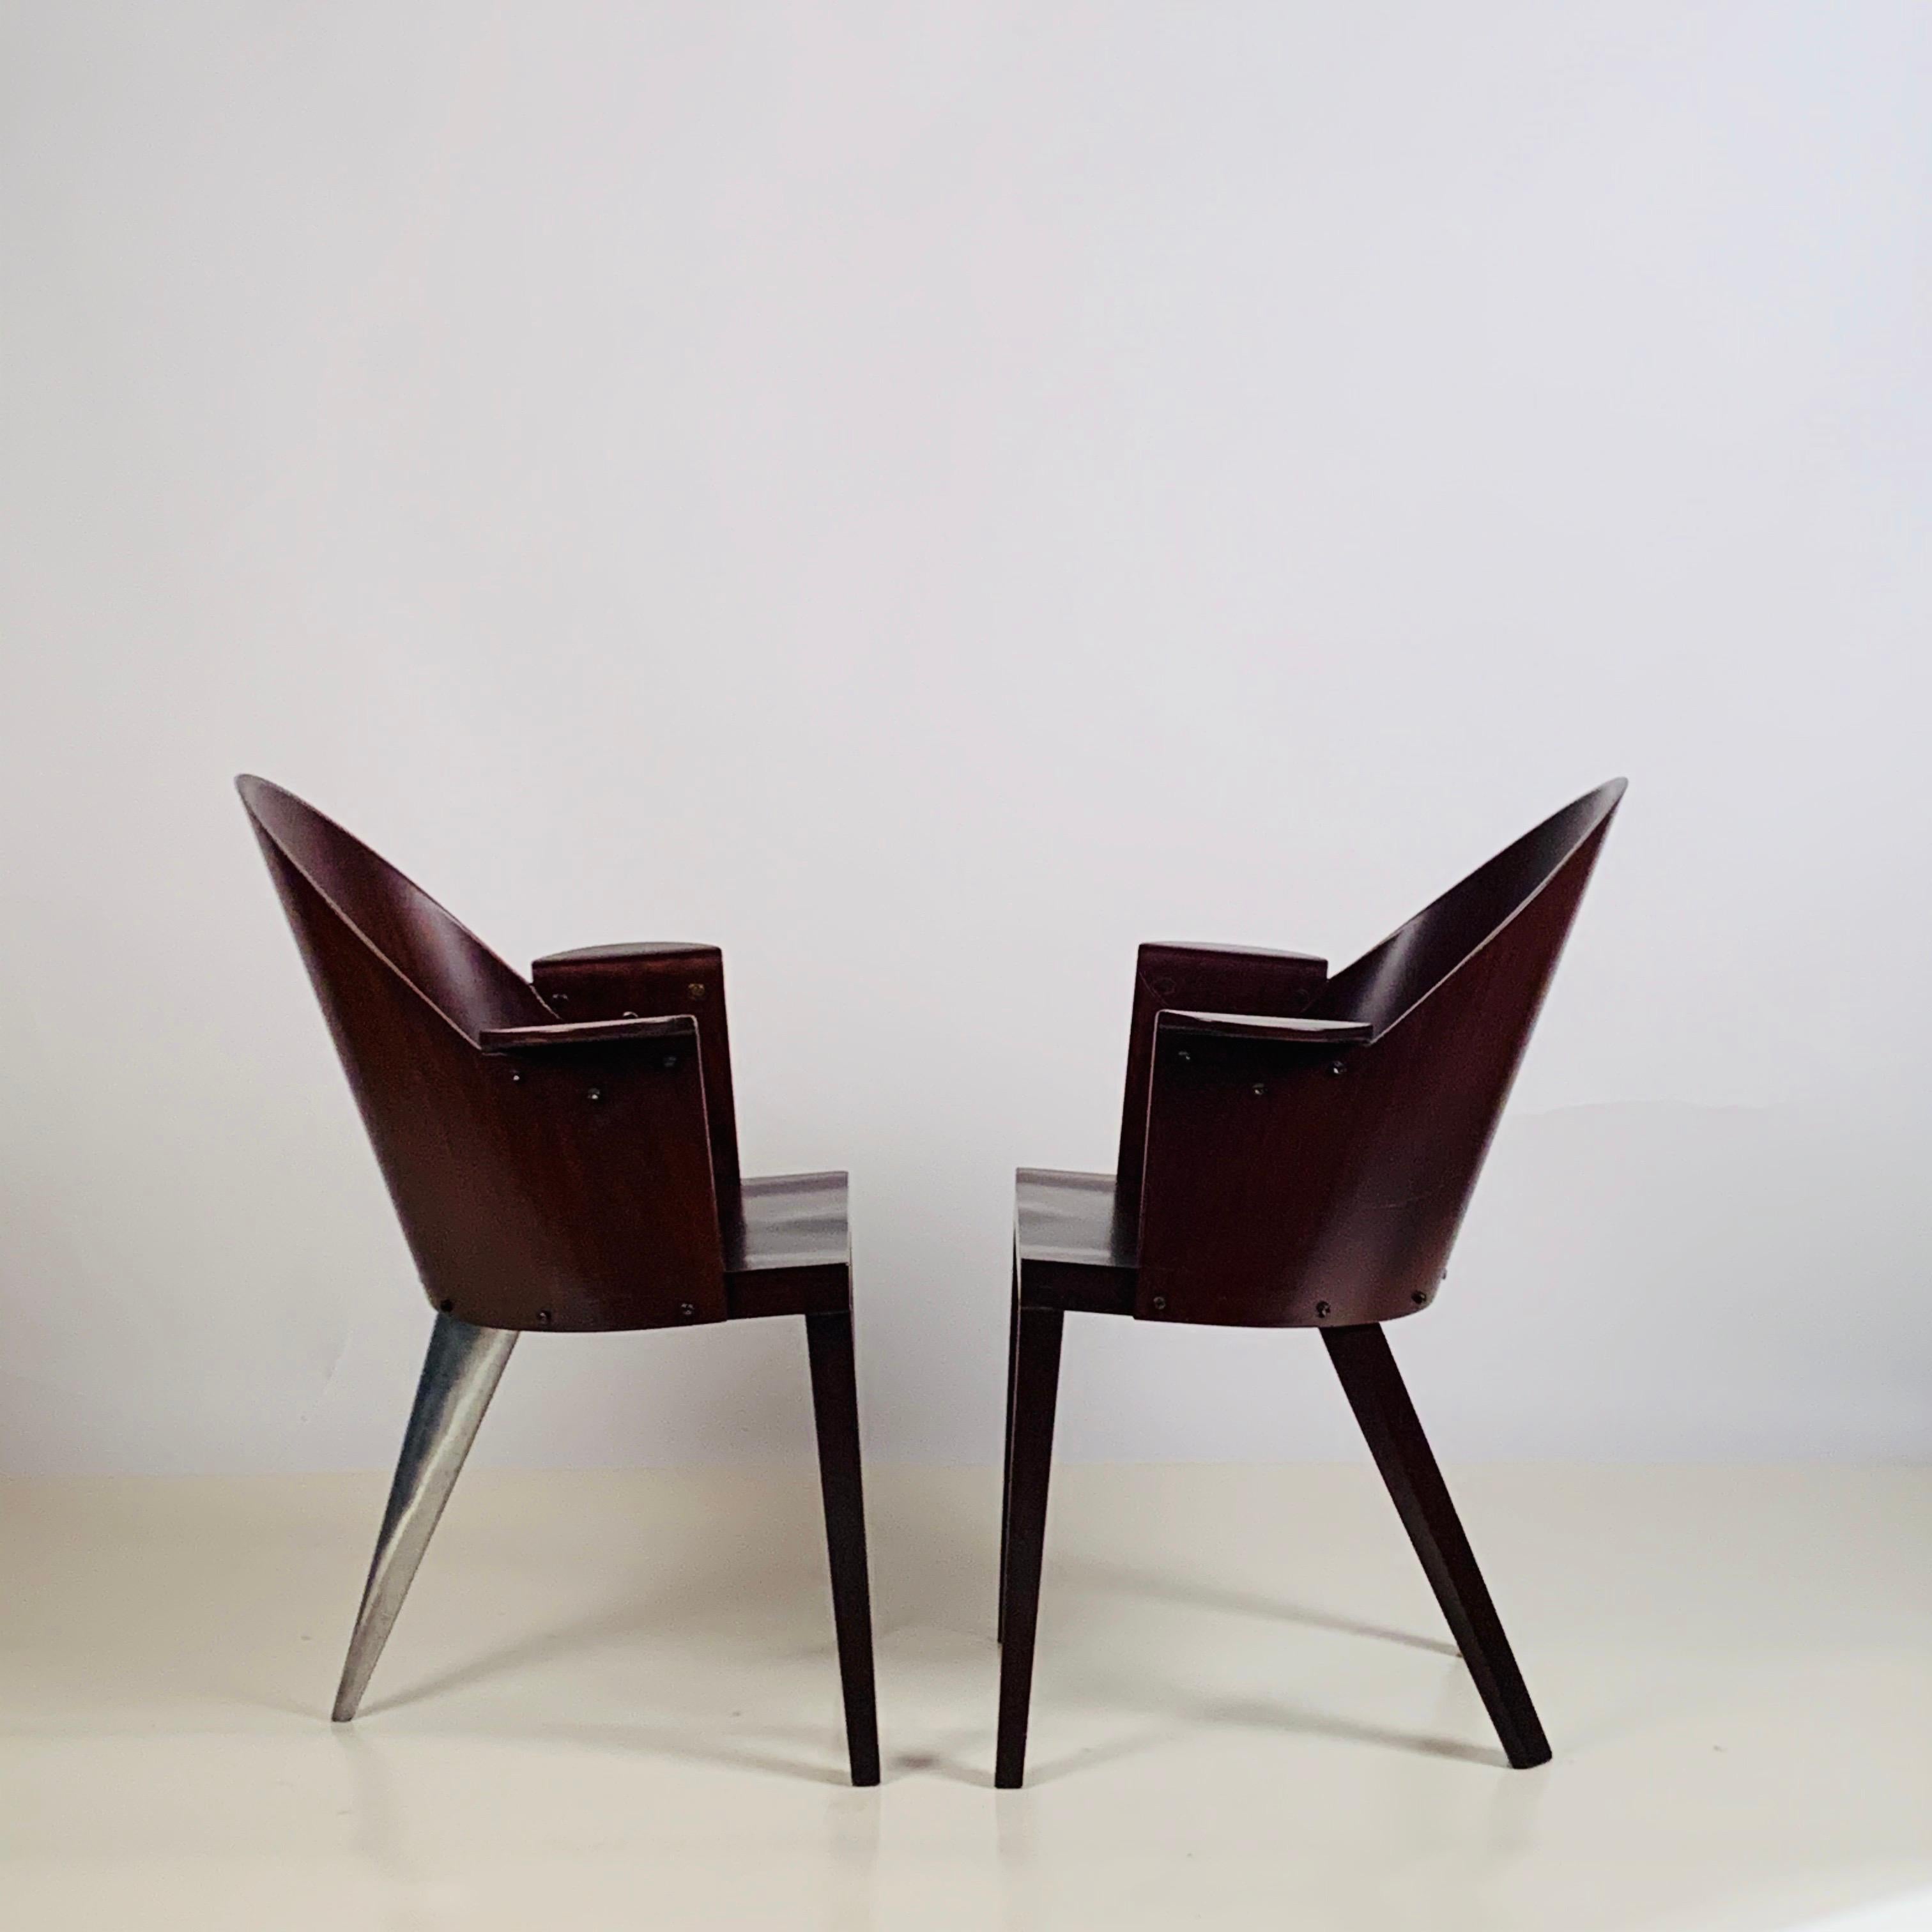 Rare paire de fauteuils Philippe Starck provenant de l'hôtel Royalton, NYC. Étiquette originale. L'hôtel Royalton est situé juste à l'est de Times Square à Manhattan, au 44 West 44th Street. Il s'agit du premier hôtel conçu par Philippe Starck et il